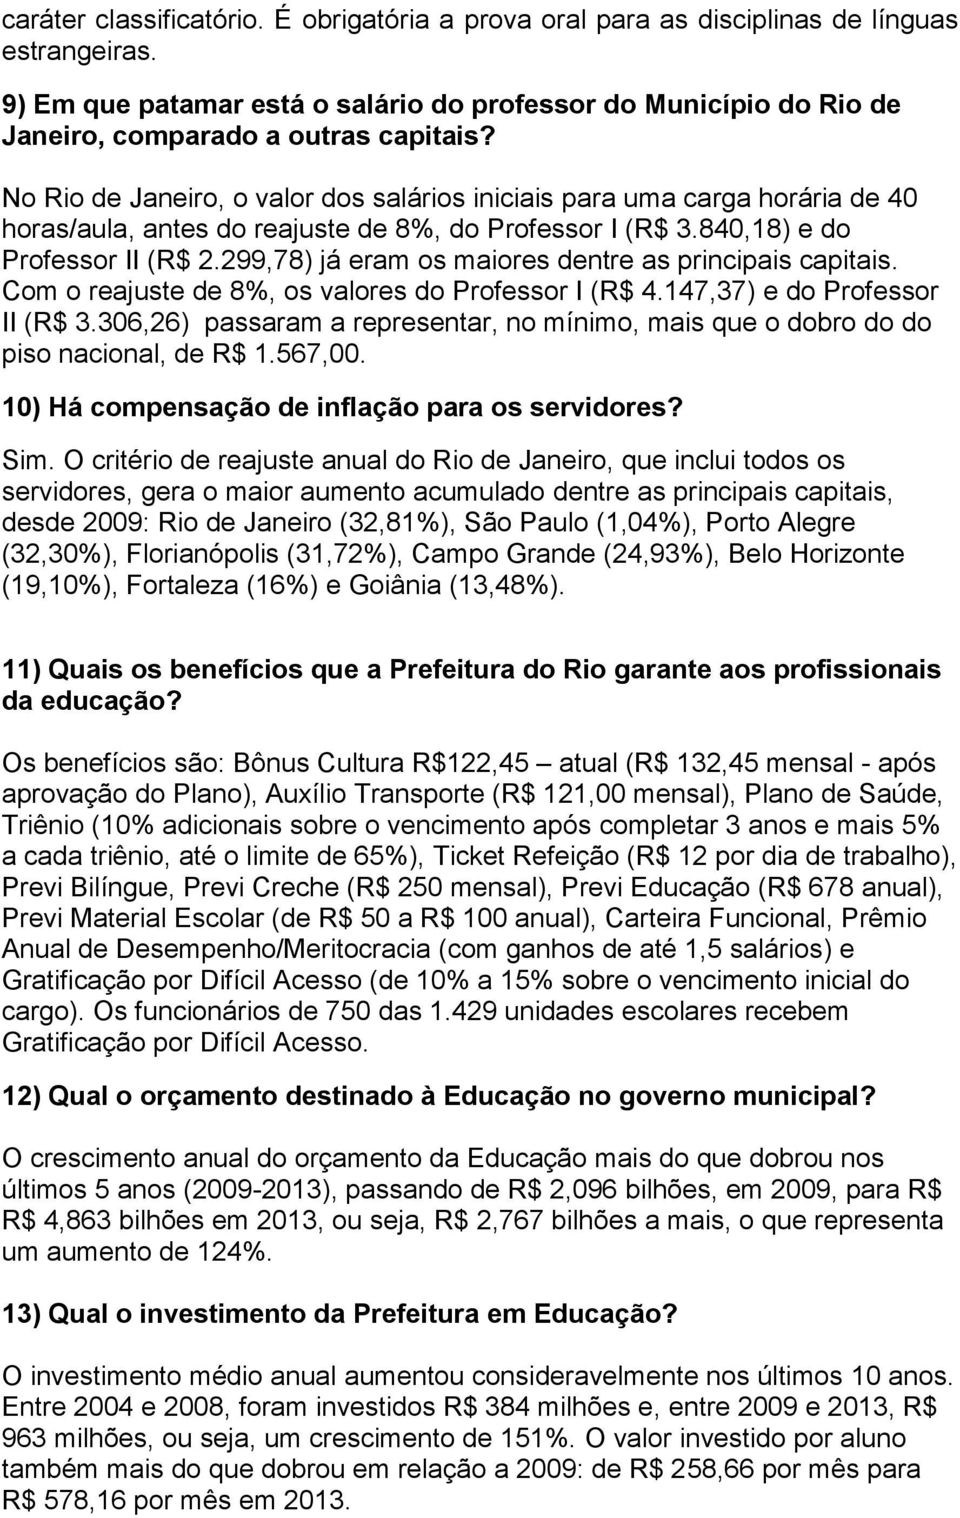 No Rio de Janeiro, o valor dos salários iniciais para uma carga horária de 40 horas/aula, antes do reajuste de 8%, do Professor I (R$ 3.840,18) e do Professor II (R$ 2.